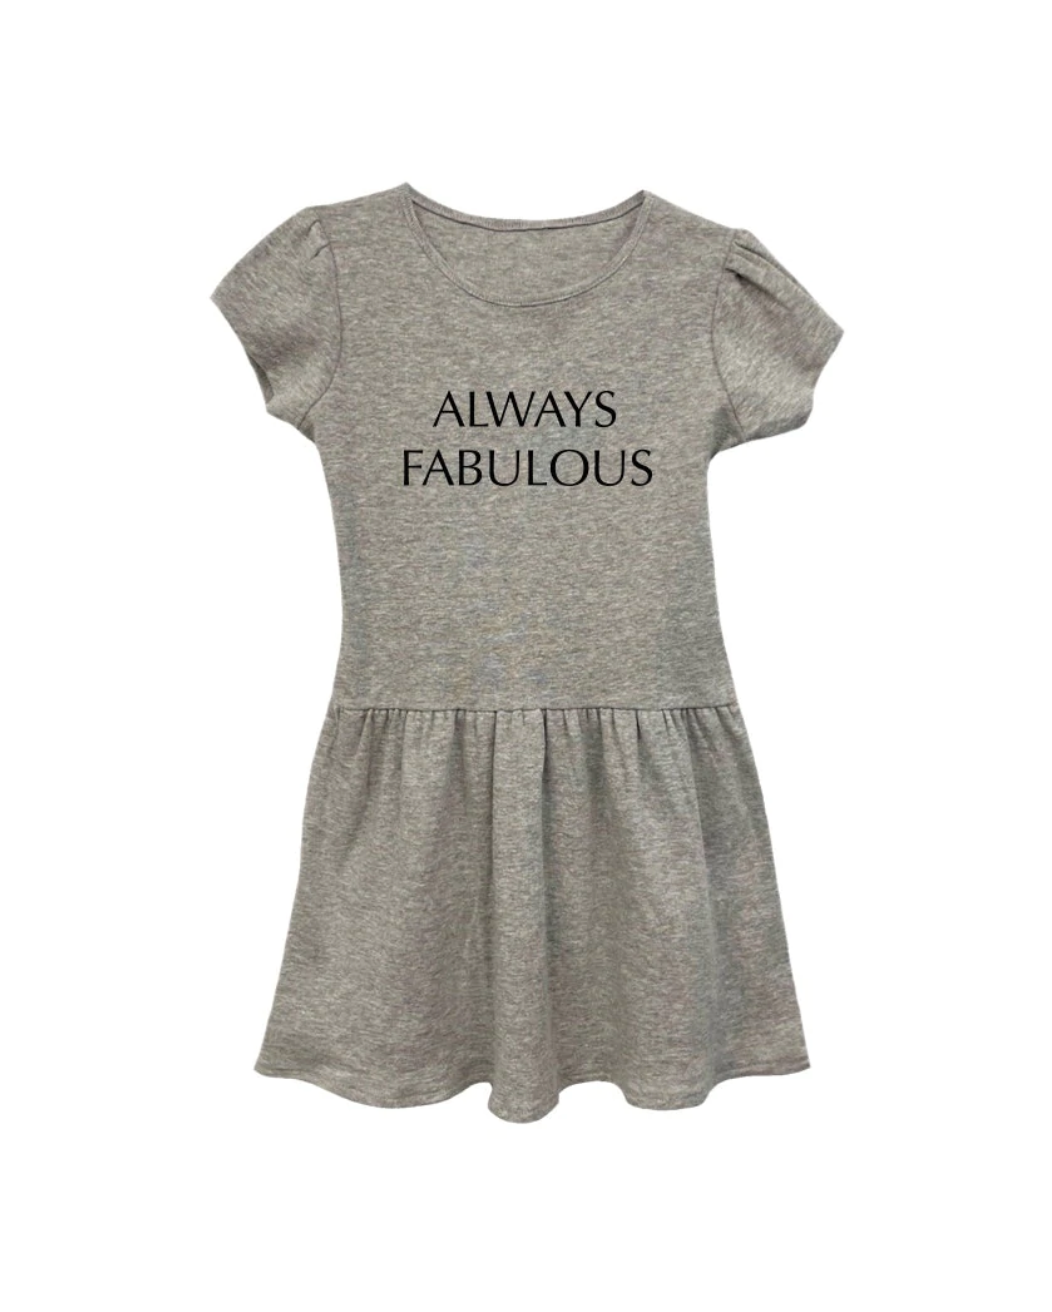 Always Fabulous Short Sleeve Dress - Twinkle Twinkle Little One